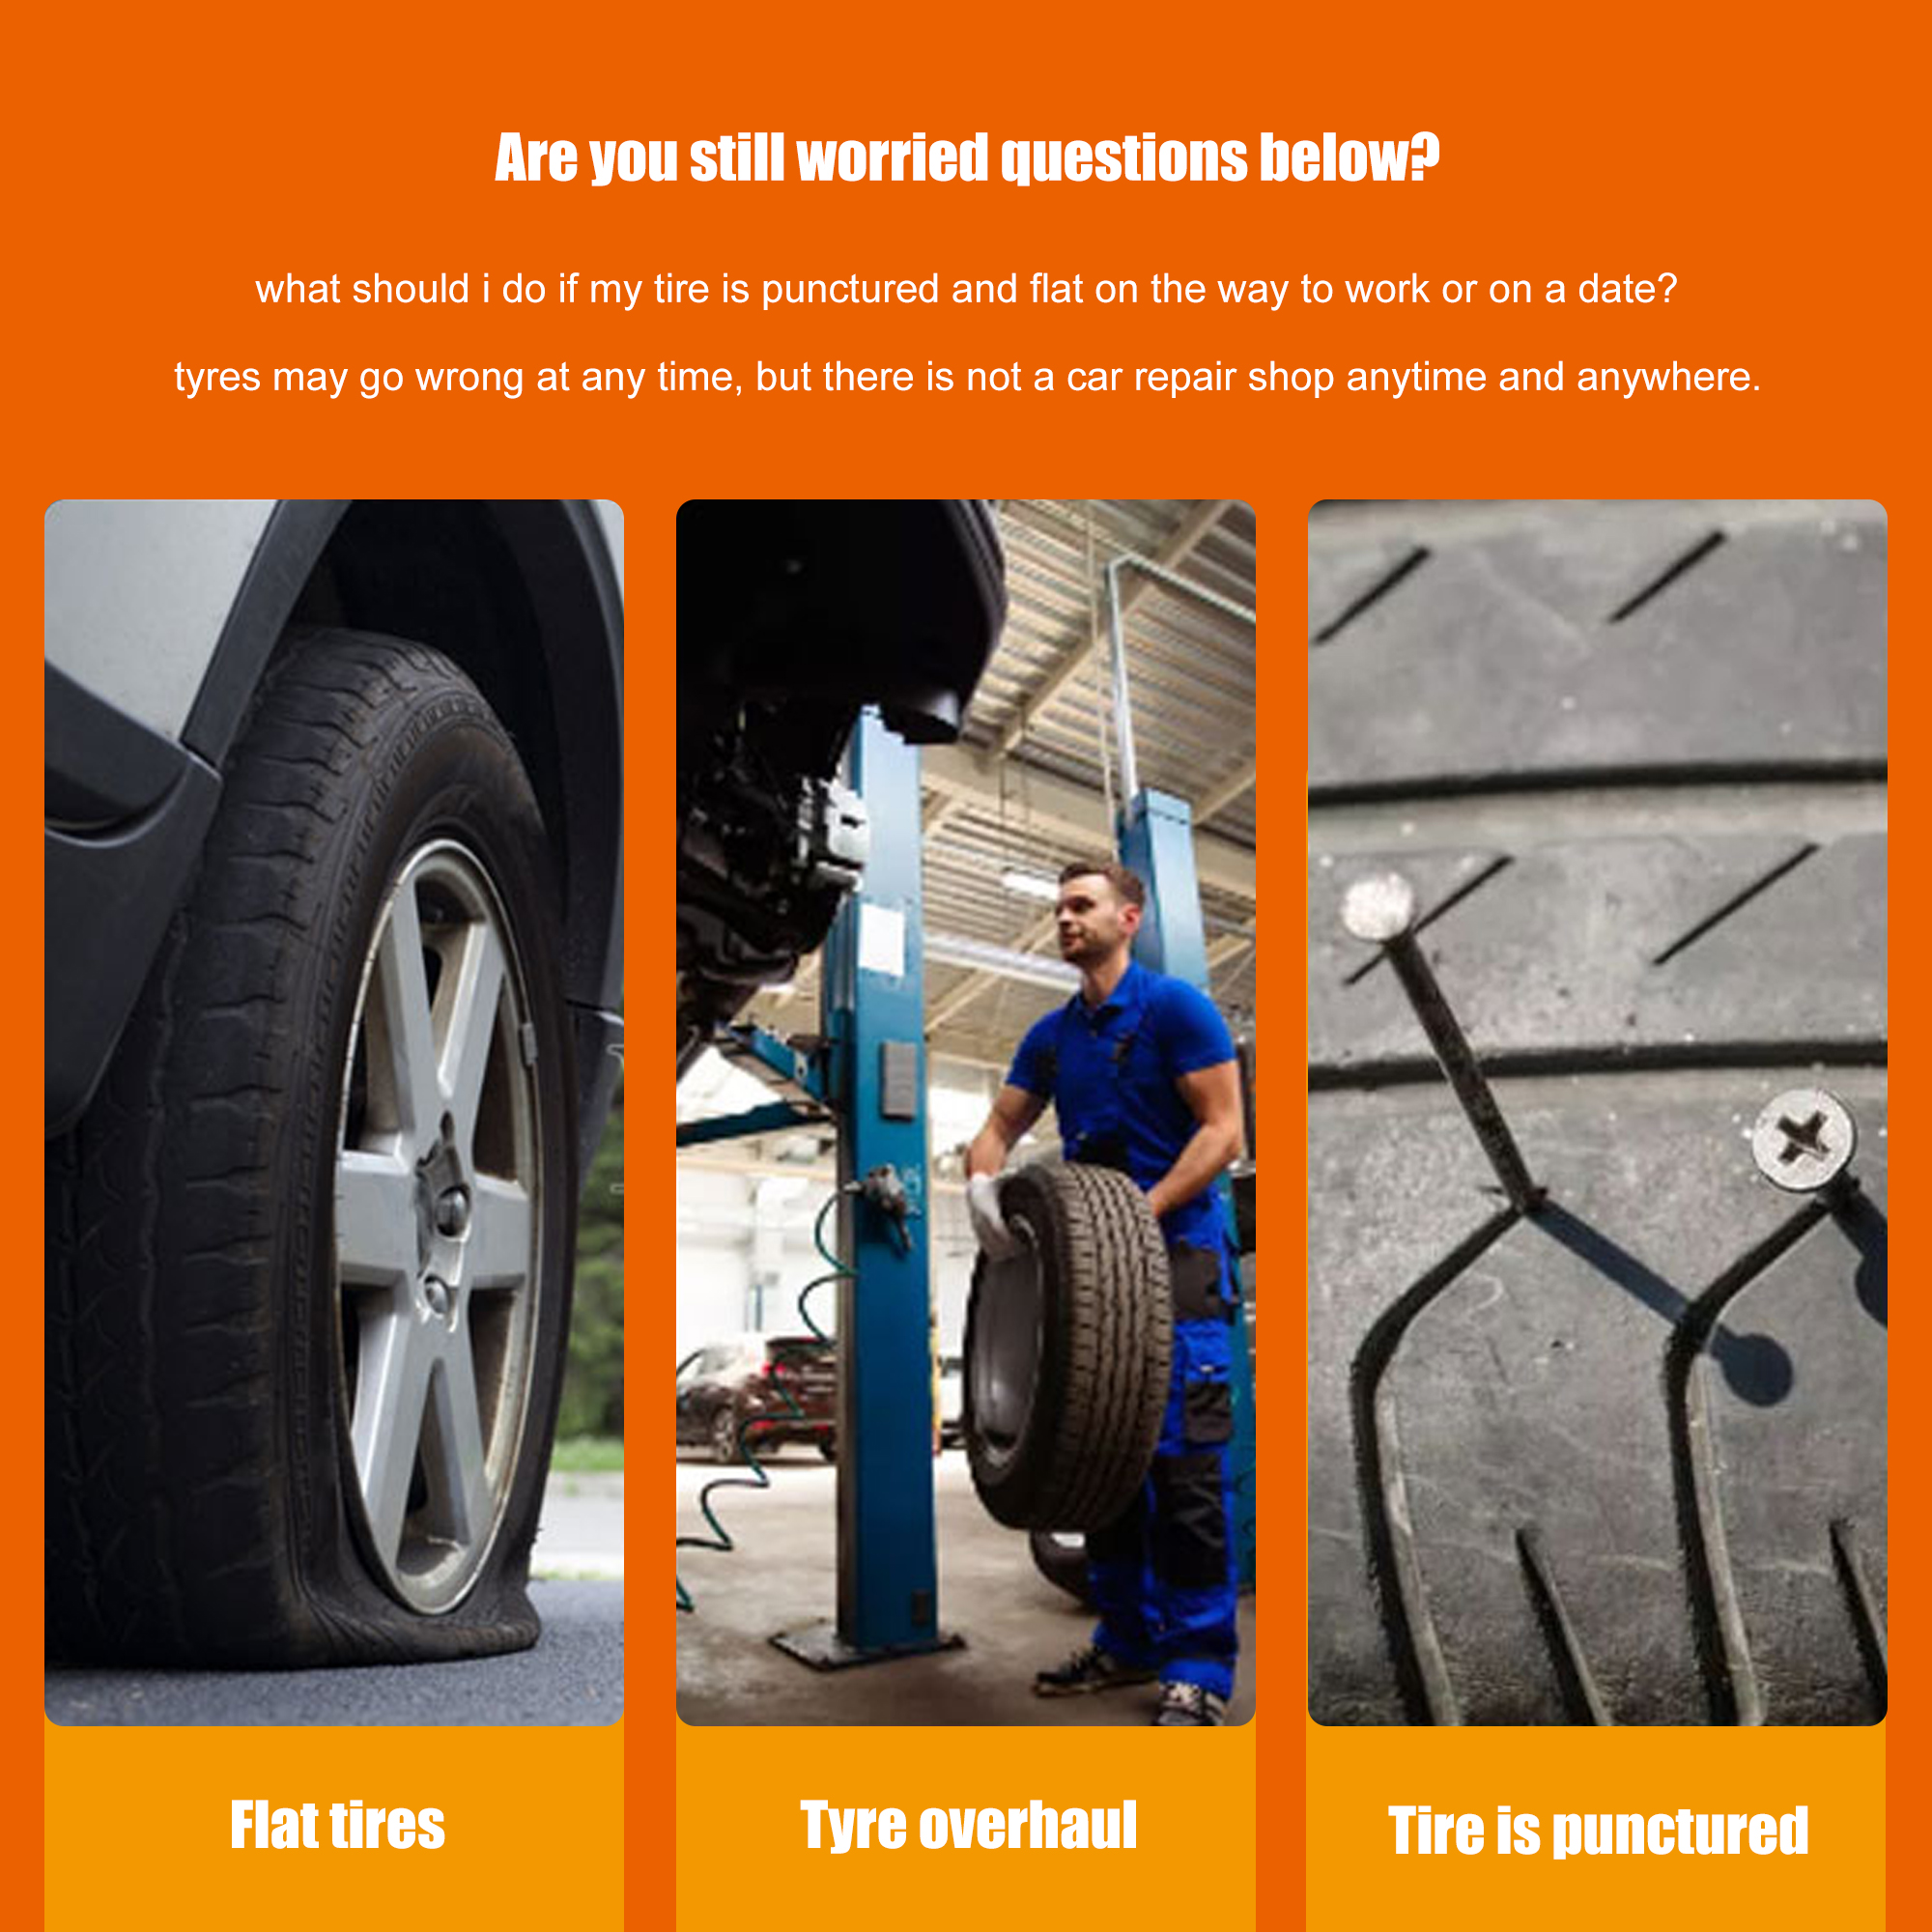 Car Tire Repairing Glue Tyre Inner Tube Puncture Repair - Temu